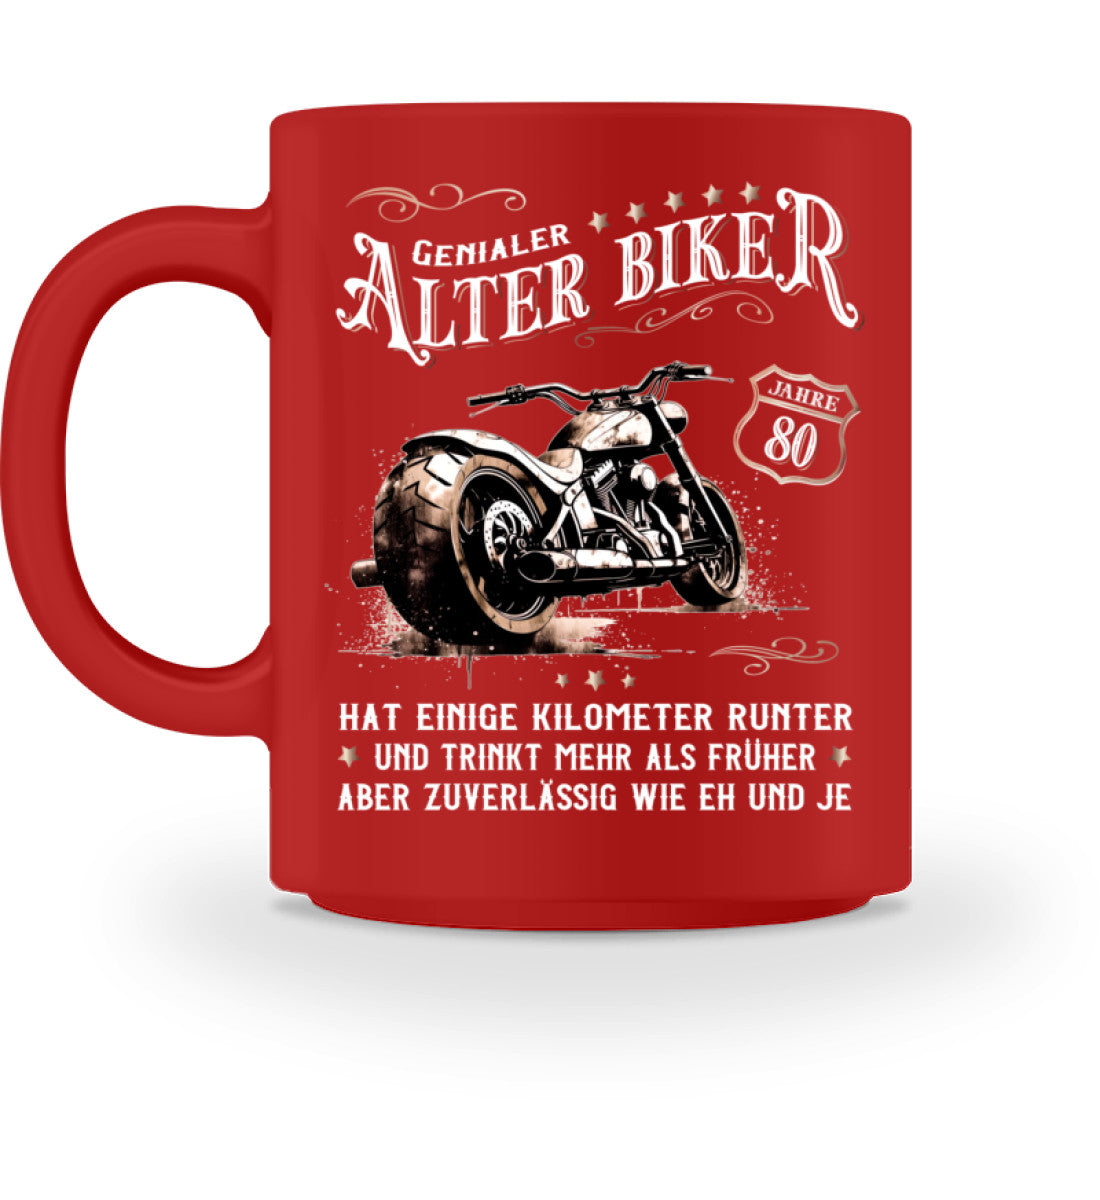 Eine Biker Geburtstags-Tasse für Motorradfahrer, von Wingbikers, mit dem beidseitigen Aufdruck, Alter Biker - 80 Jahre - Einige Kilometer runter, trinkt mehr - aber zuverlässig wie eh und je, in rot.